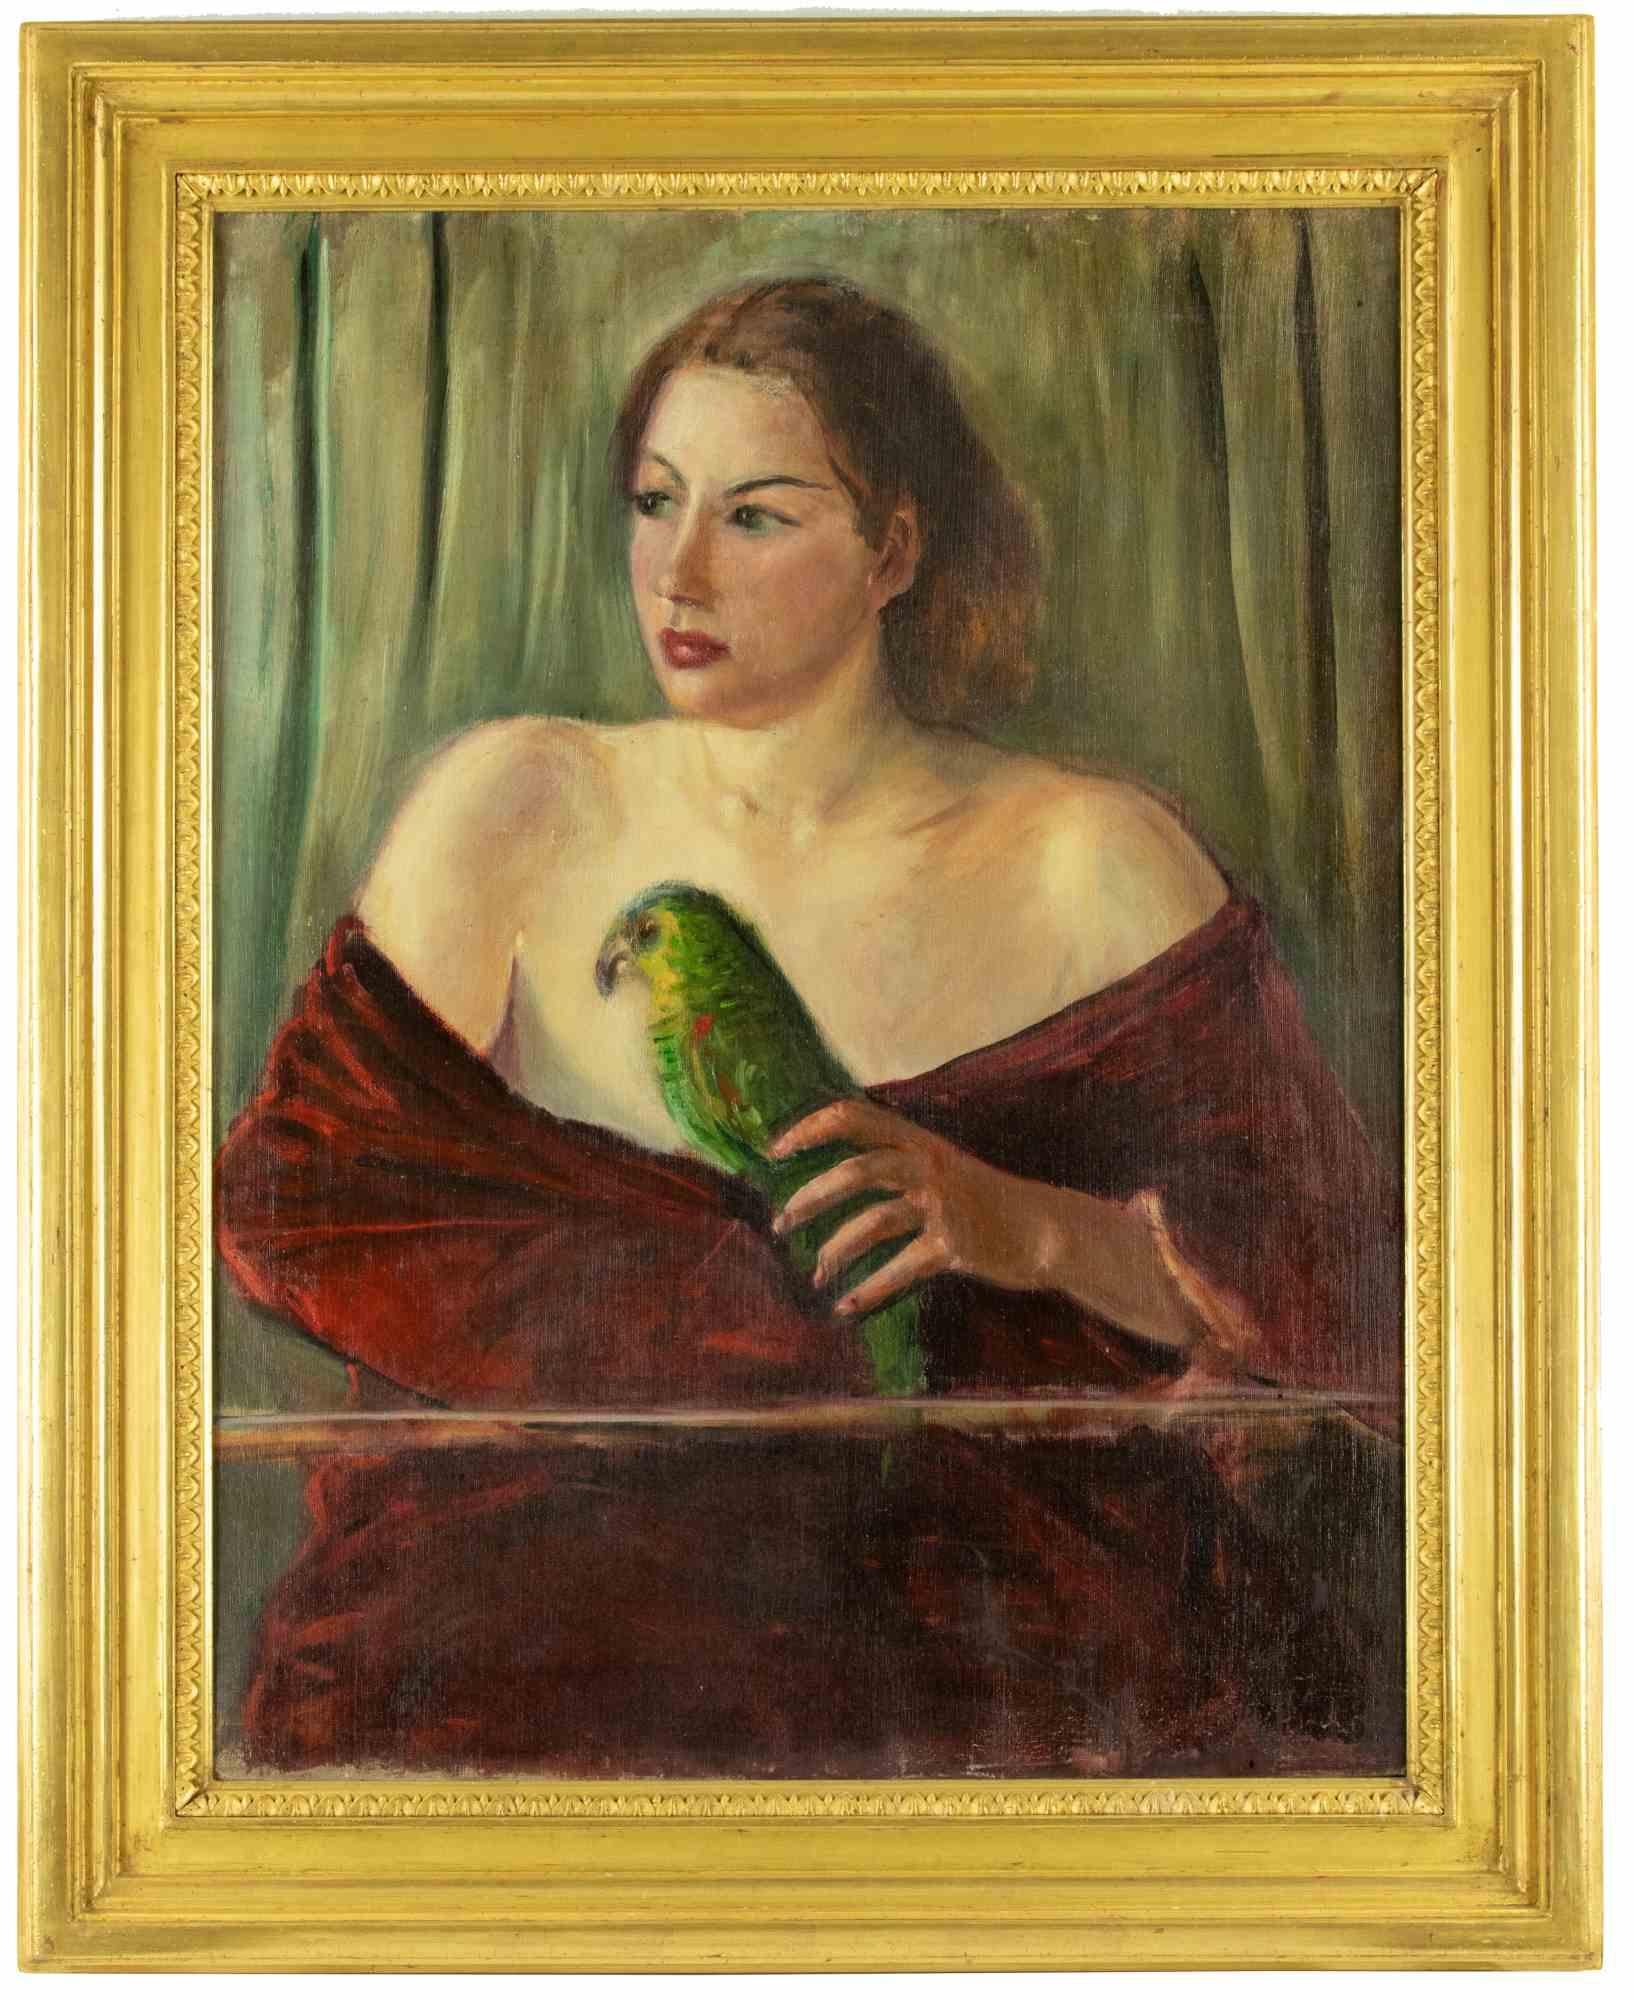 Frau mit Papagei ist ein modernes Kunstwerk von Antonio Feltrinelli aus den 1930er Jahren.

Gemischte farbige Ölgemälde auf Leinwand.

Inklusive Rahmen

Nicht unterzeichnet.

Antonio Feltrinelli (Mailand, 1887 - Gargnano, 1942)
Er wurde am 1. Juni